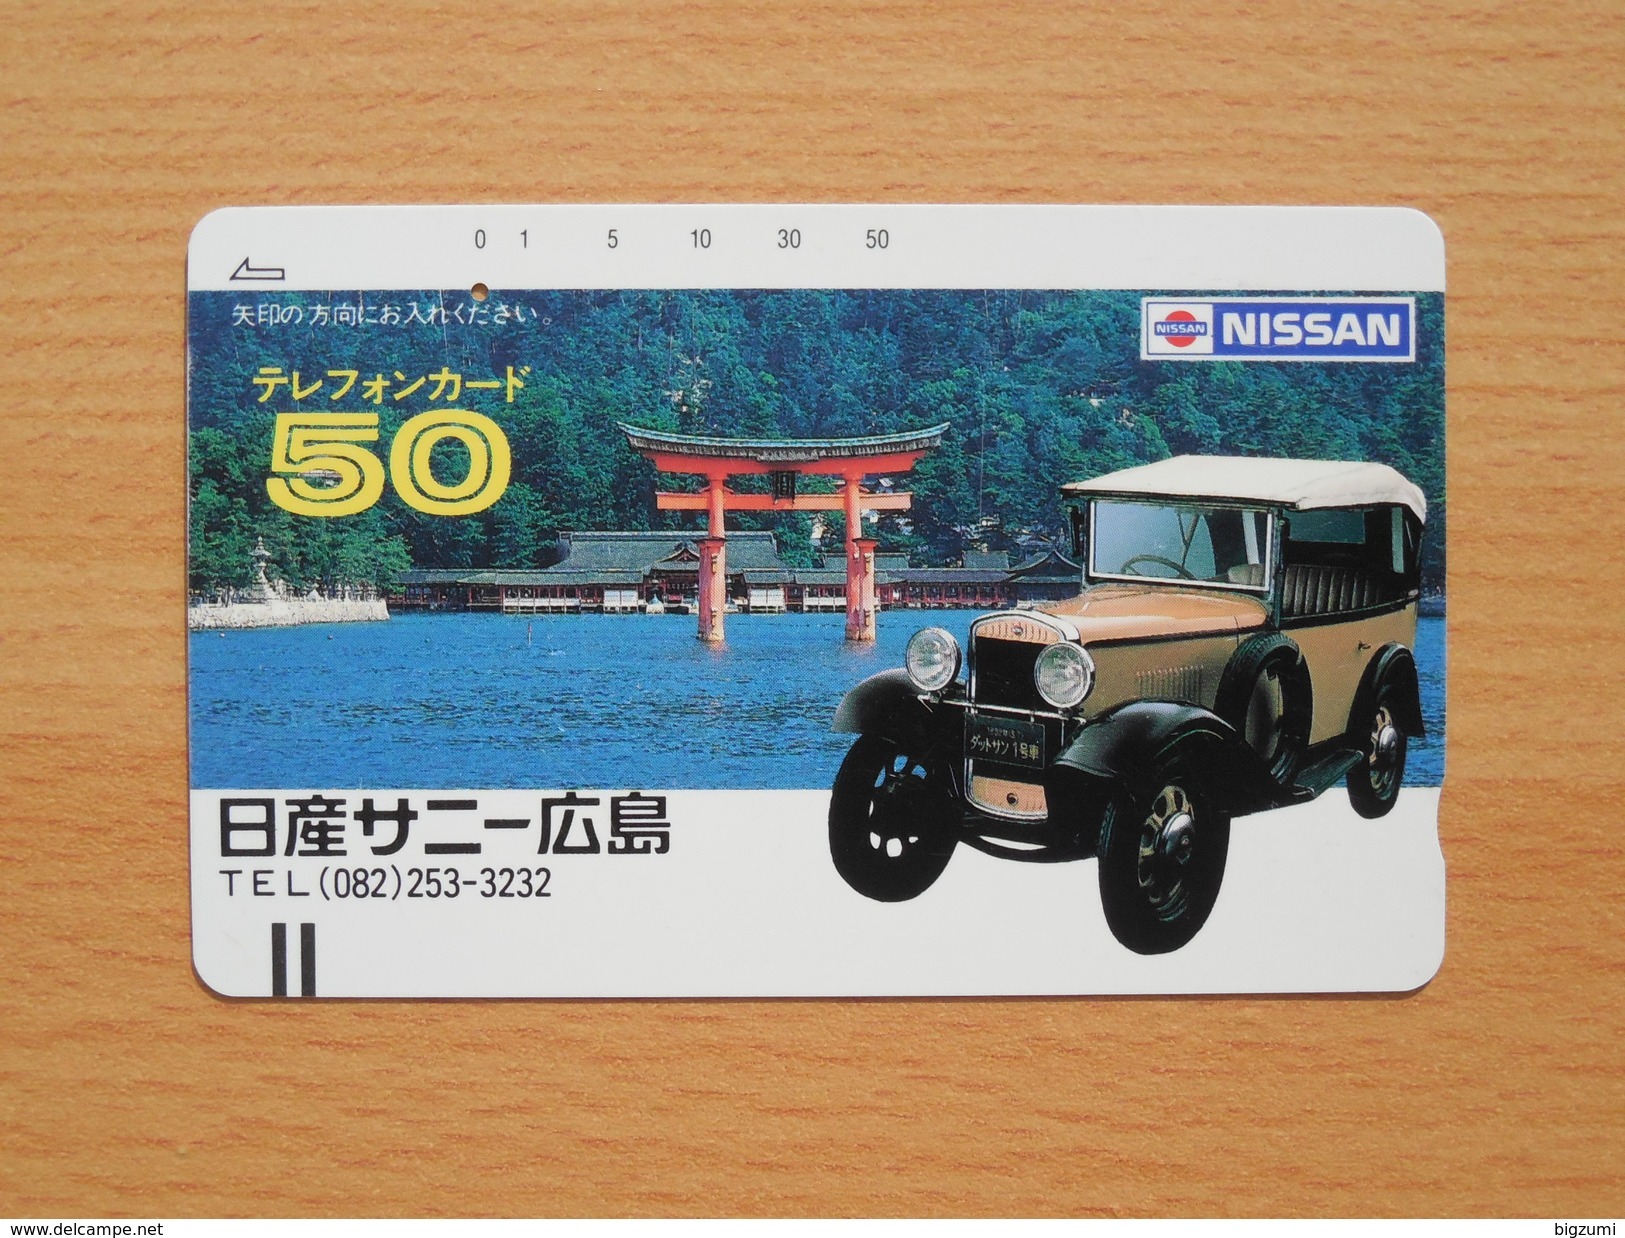 Japon Japan Free Front Bar, Balken Phonecard - 110-3642 / Hiroshima Nissan / Shrine / One Punch - Voitures